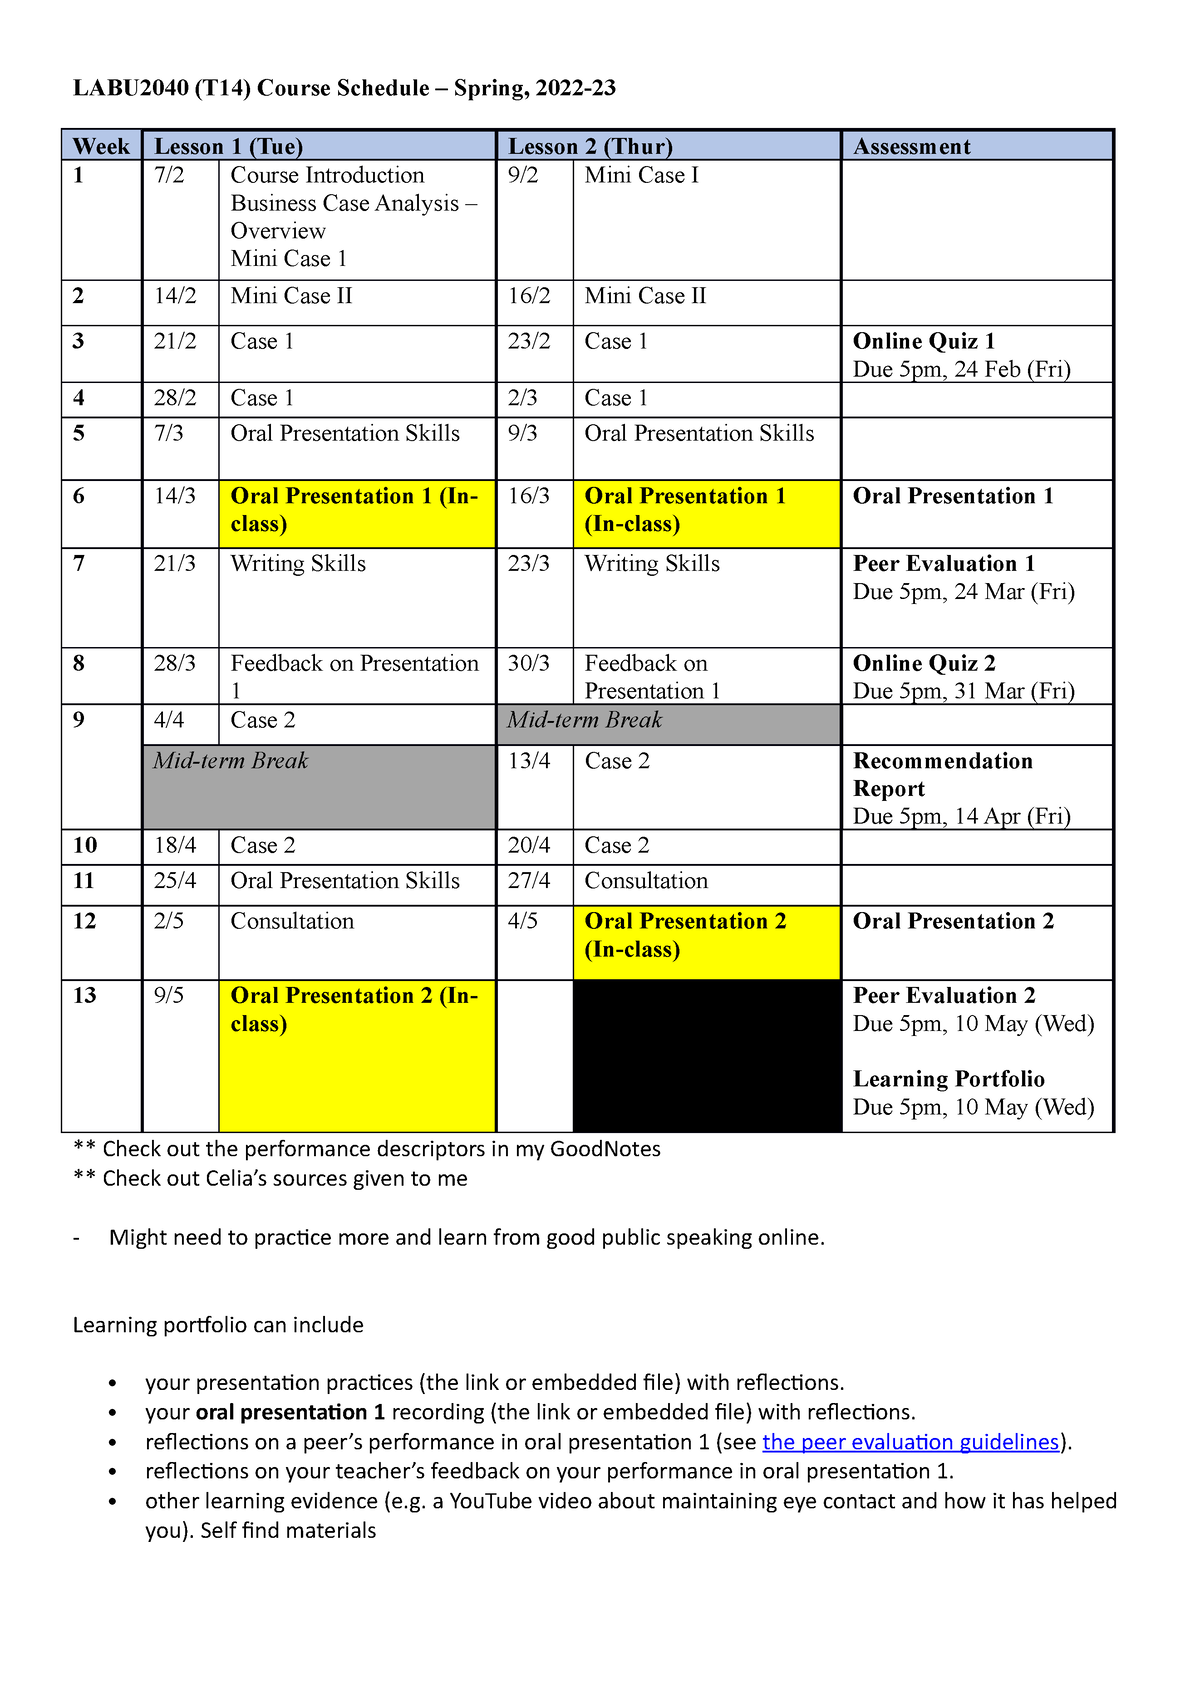 LABU2040 Schedule T14 Spring 202223 LABU2040 (T14) Course Schedule